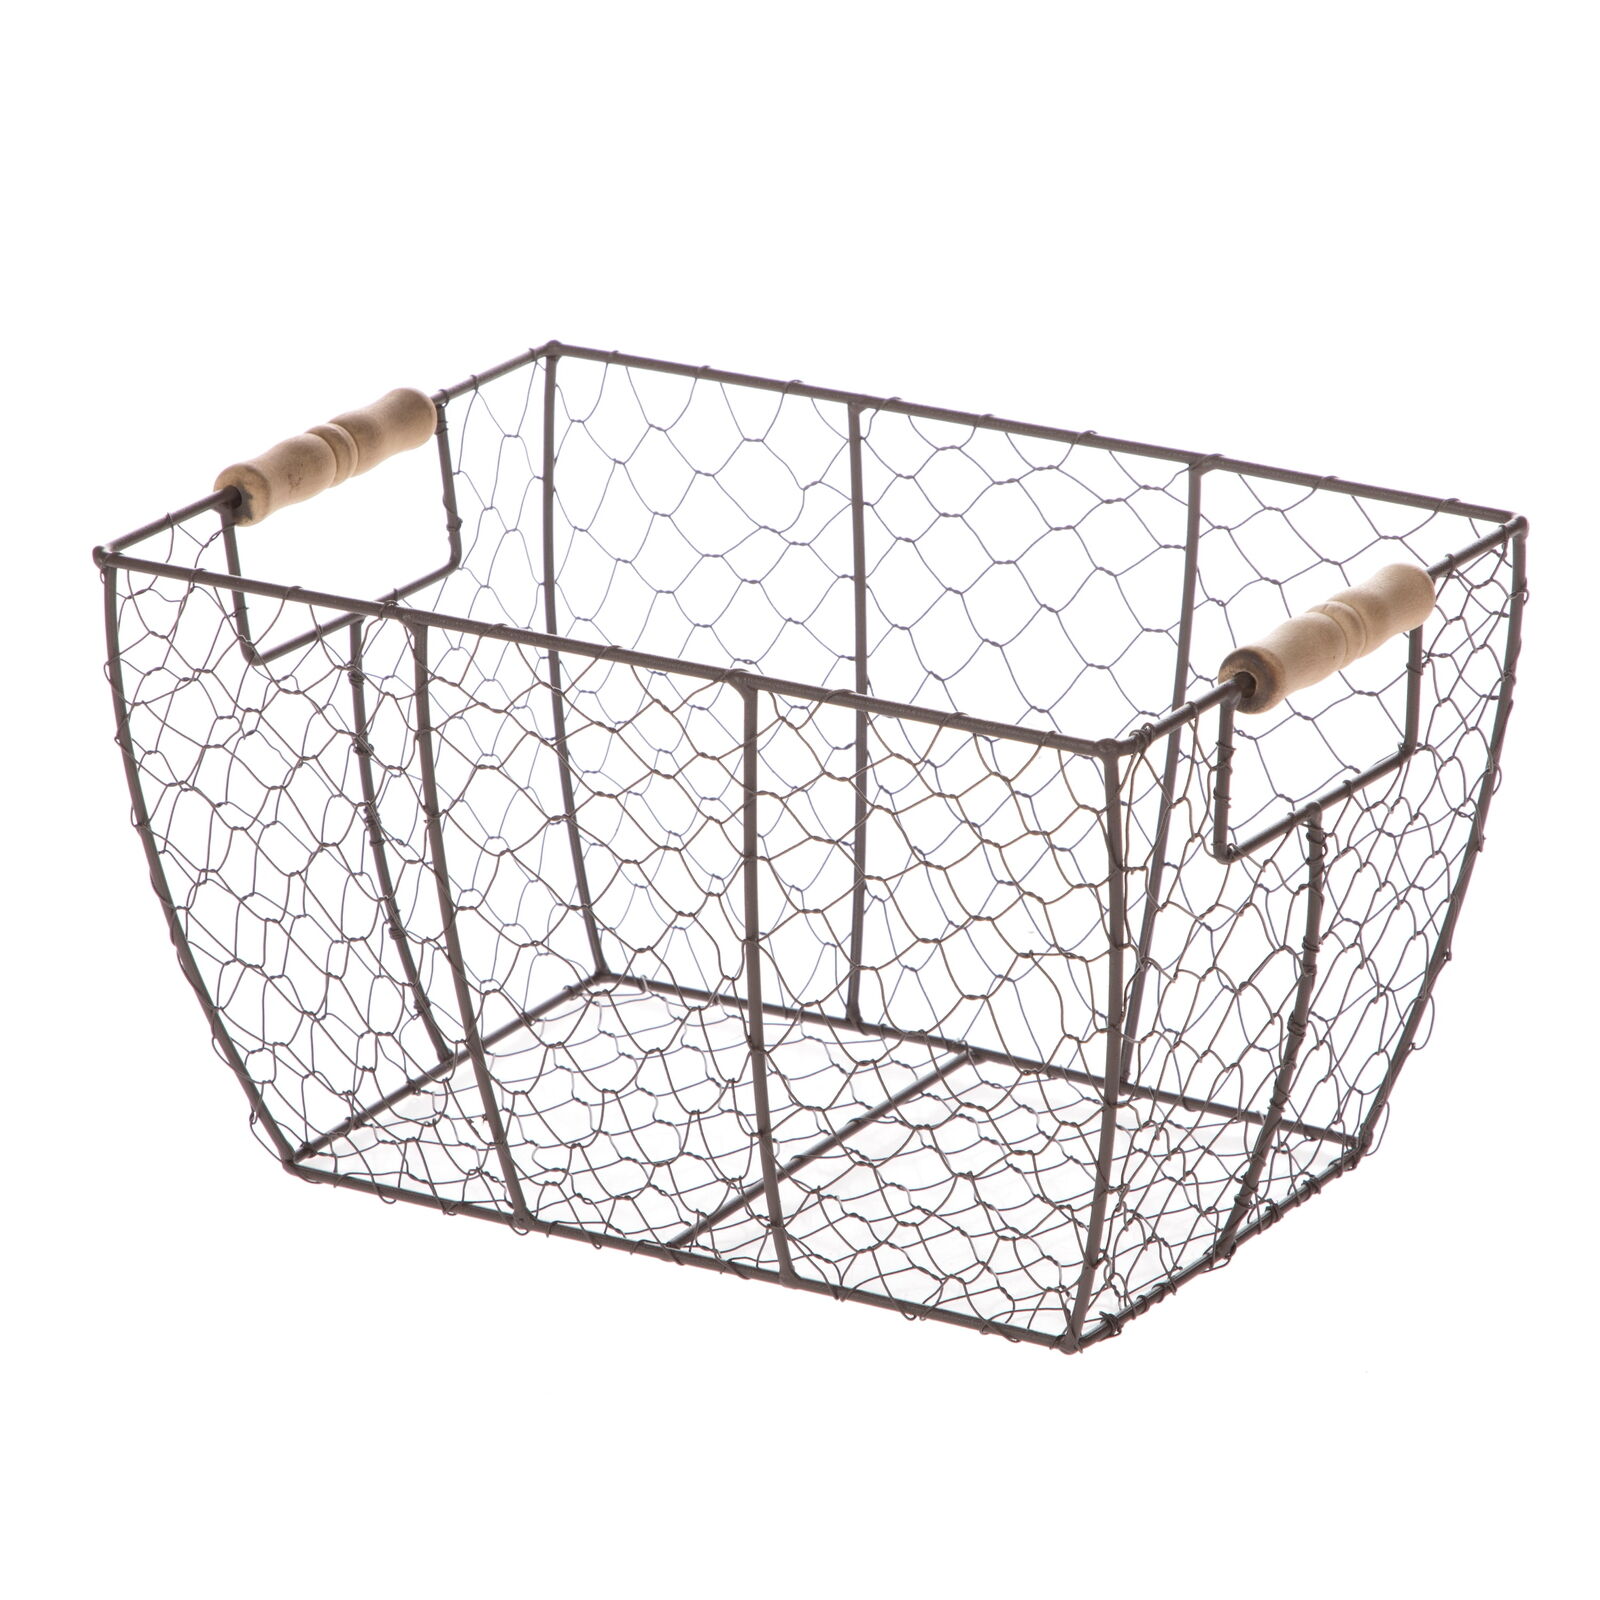 Decorative Brown Chicken Wire Basket with Wood Handles. 12.2x8x7.28